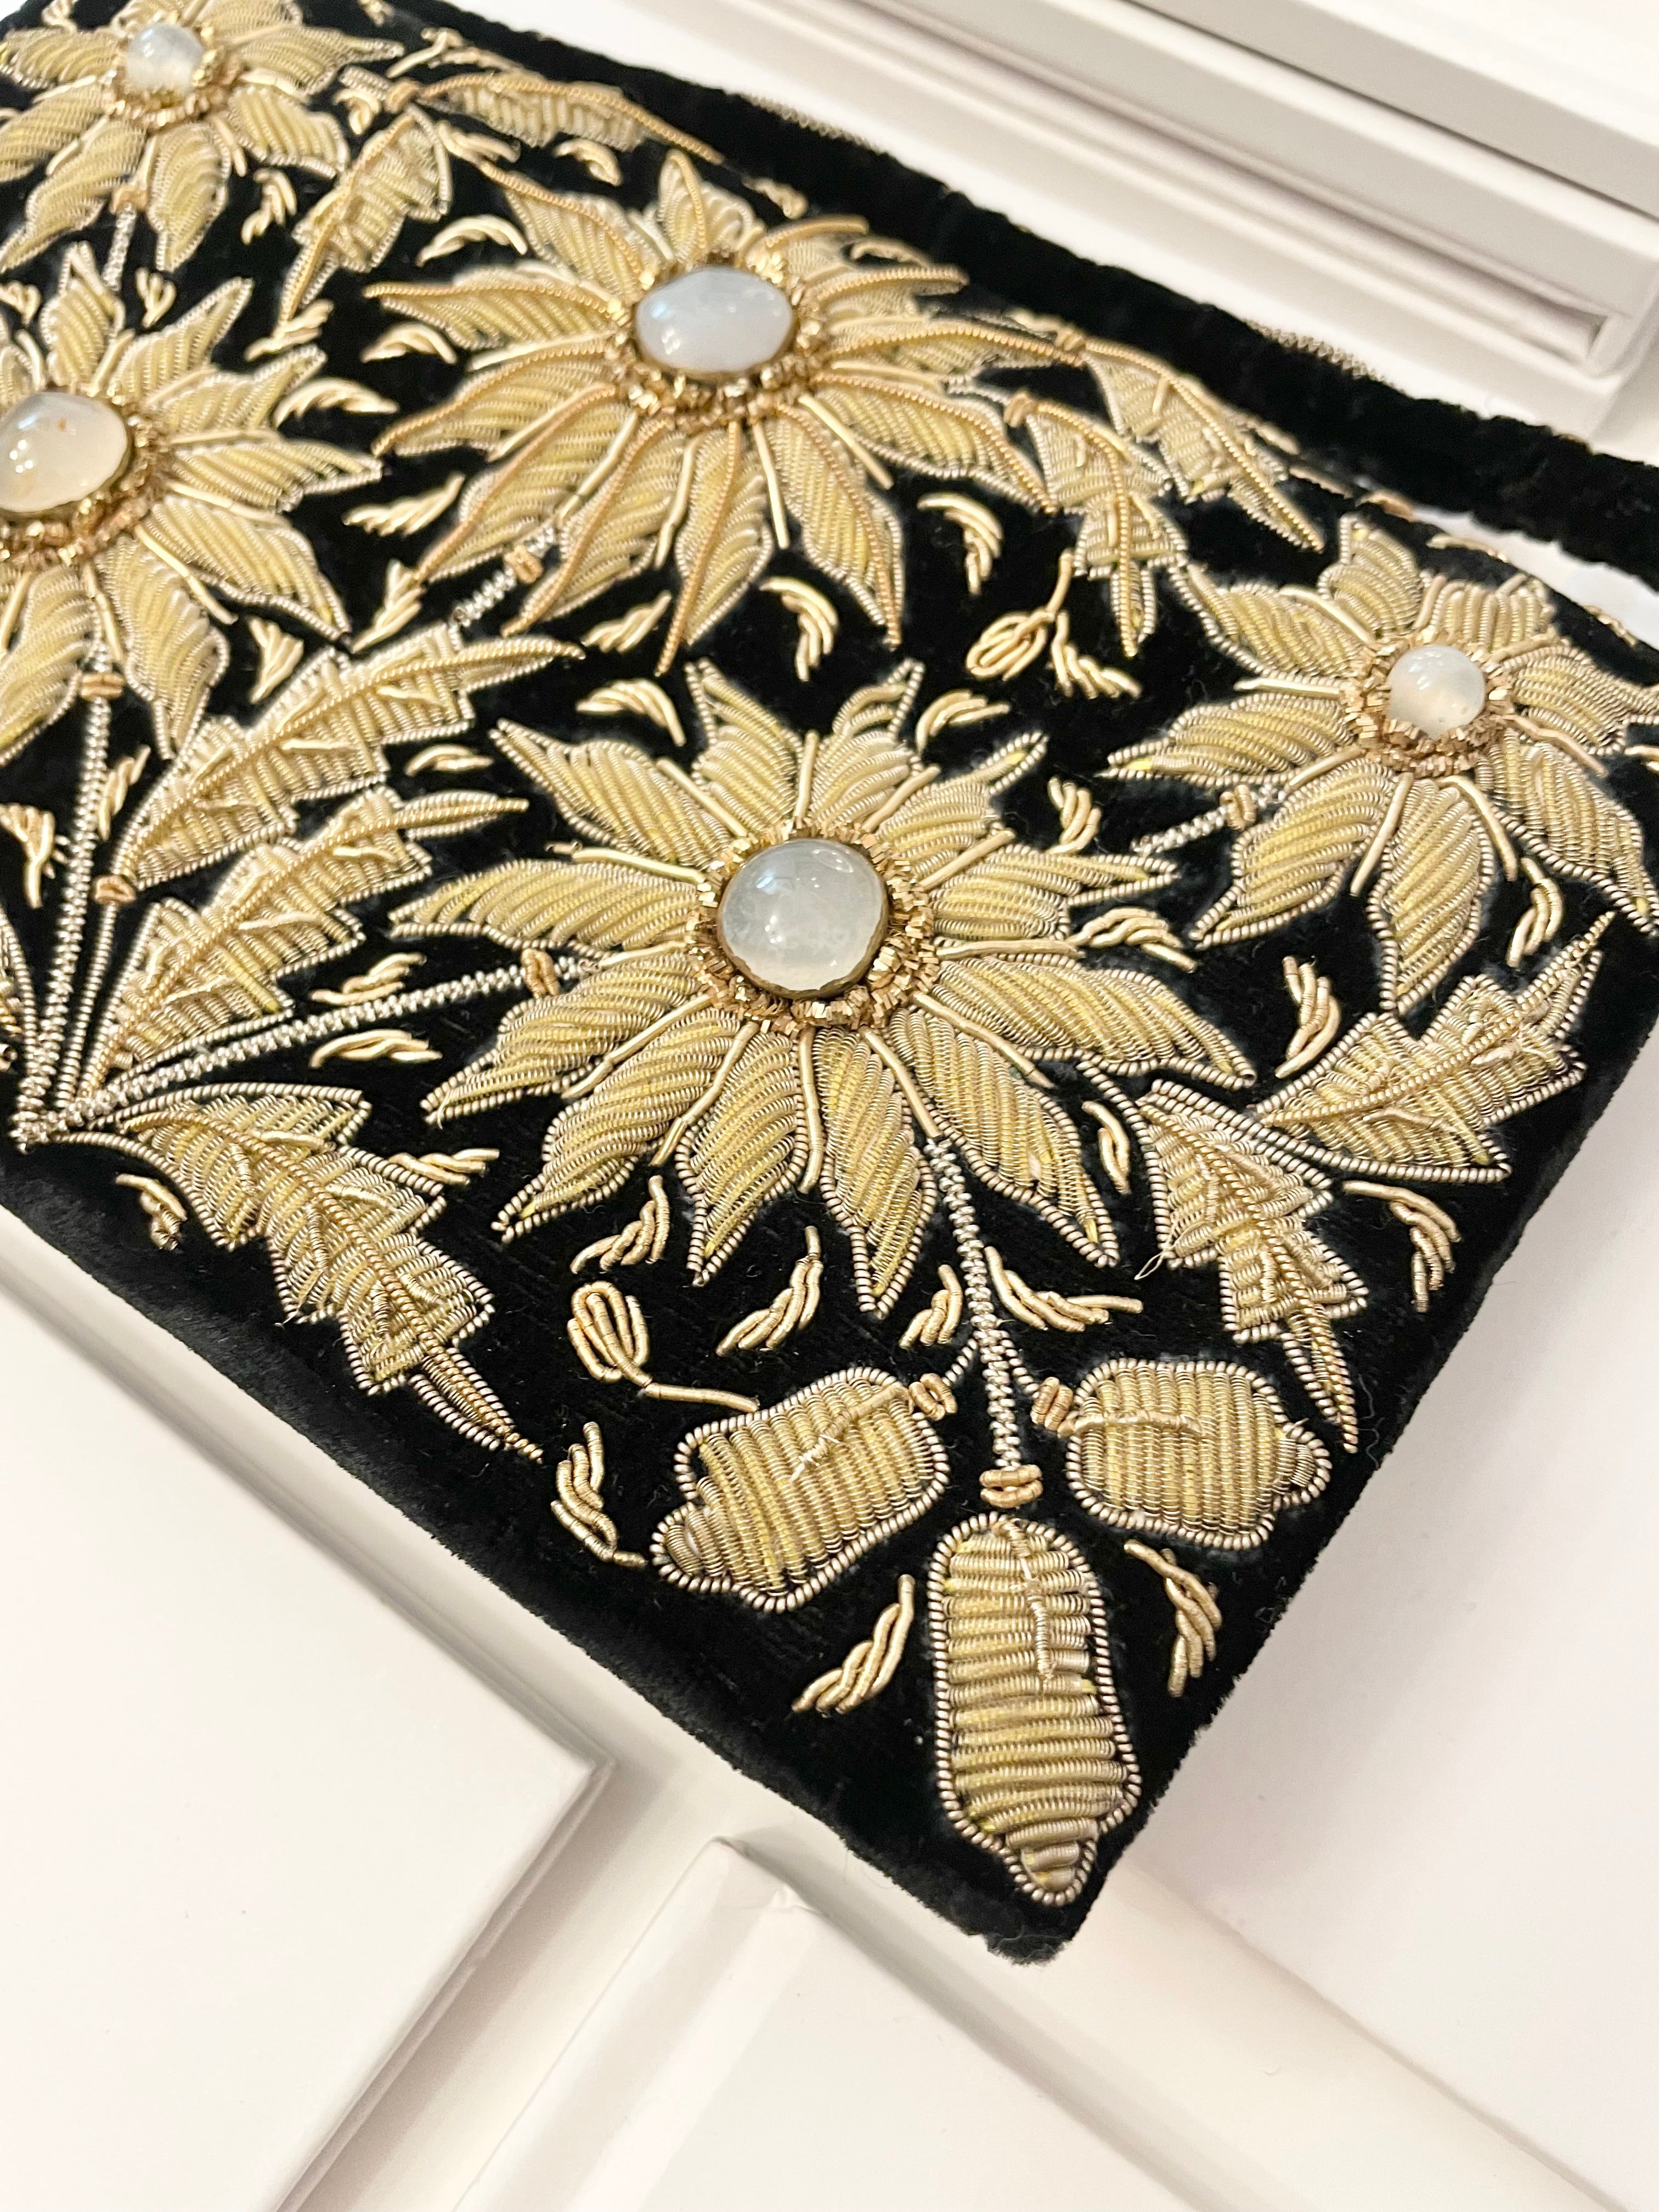 Vintage stunning, and elegant faux moonstone noir velvet handbag.... so divine.